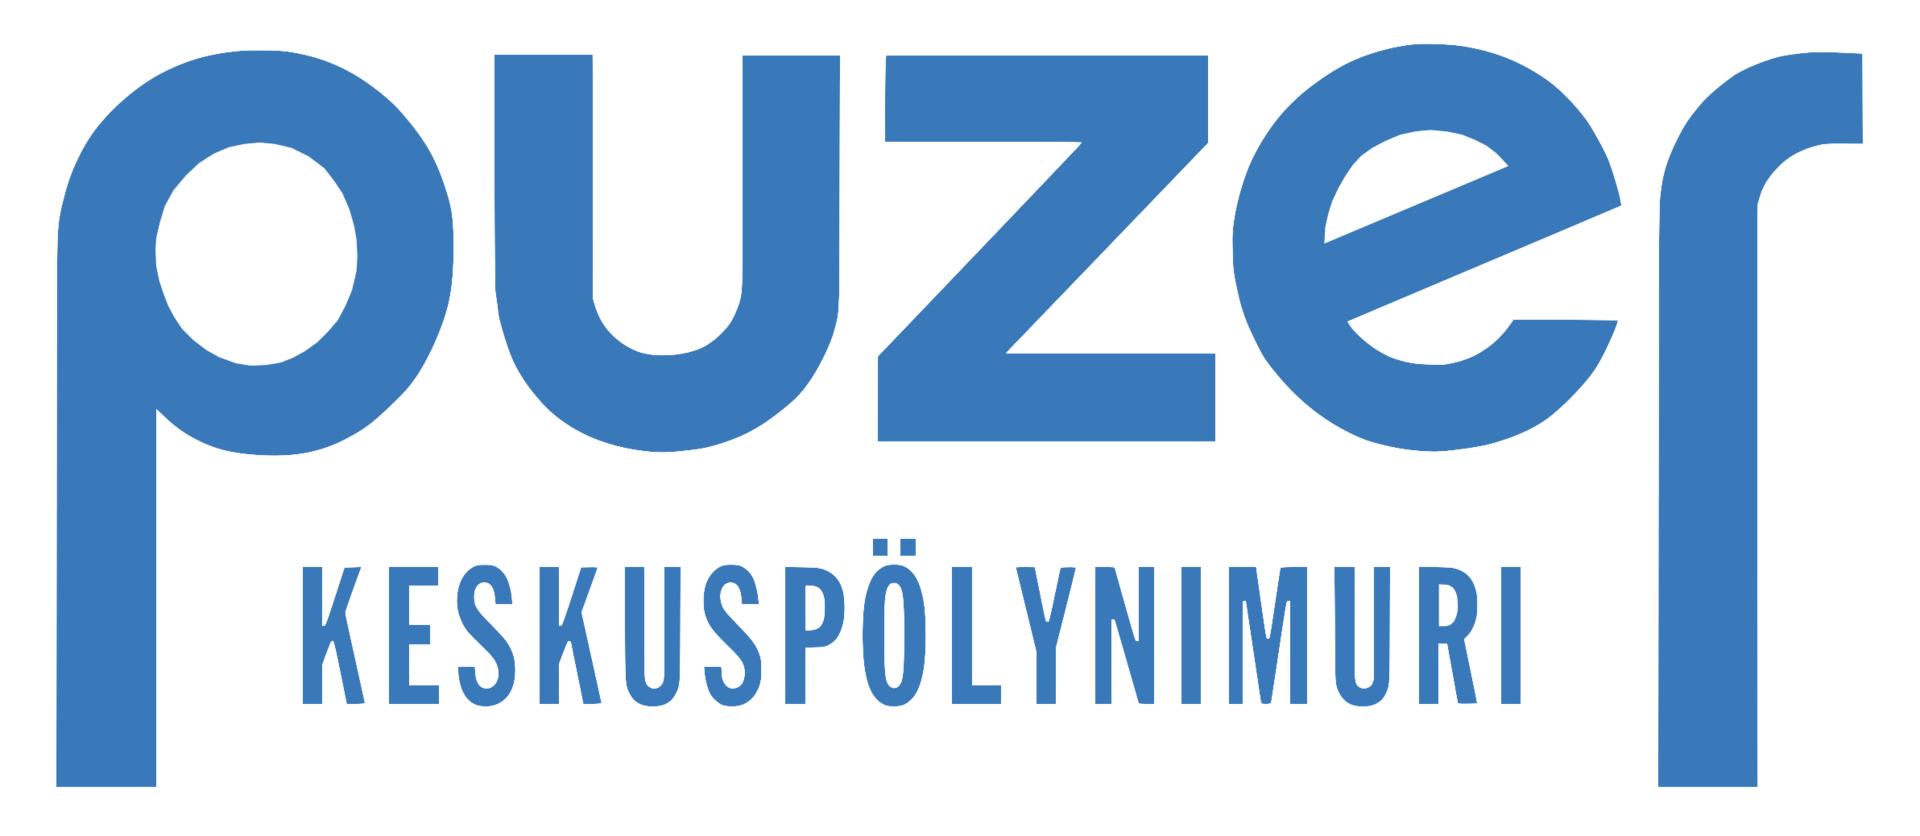 www.puzer.fi